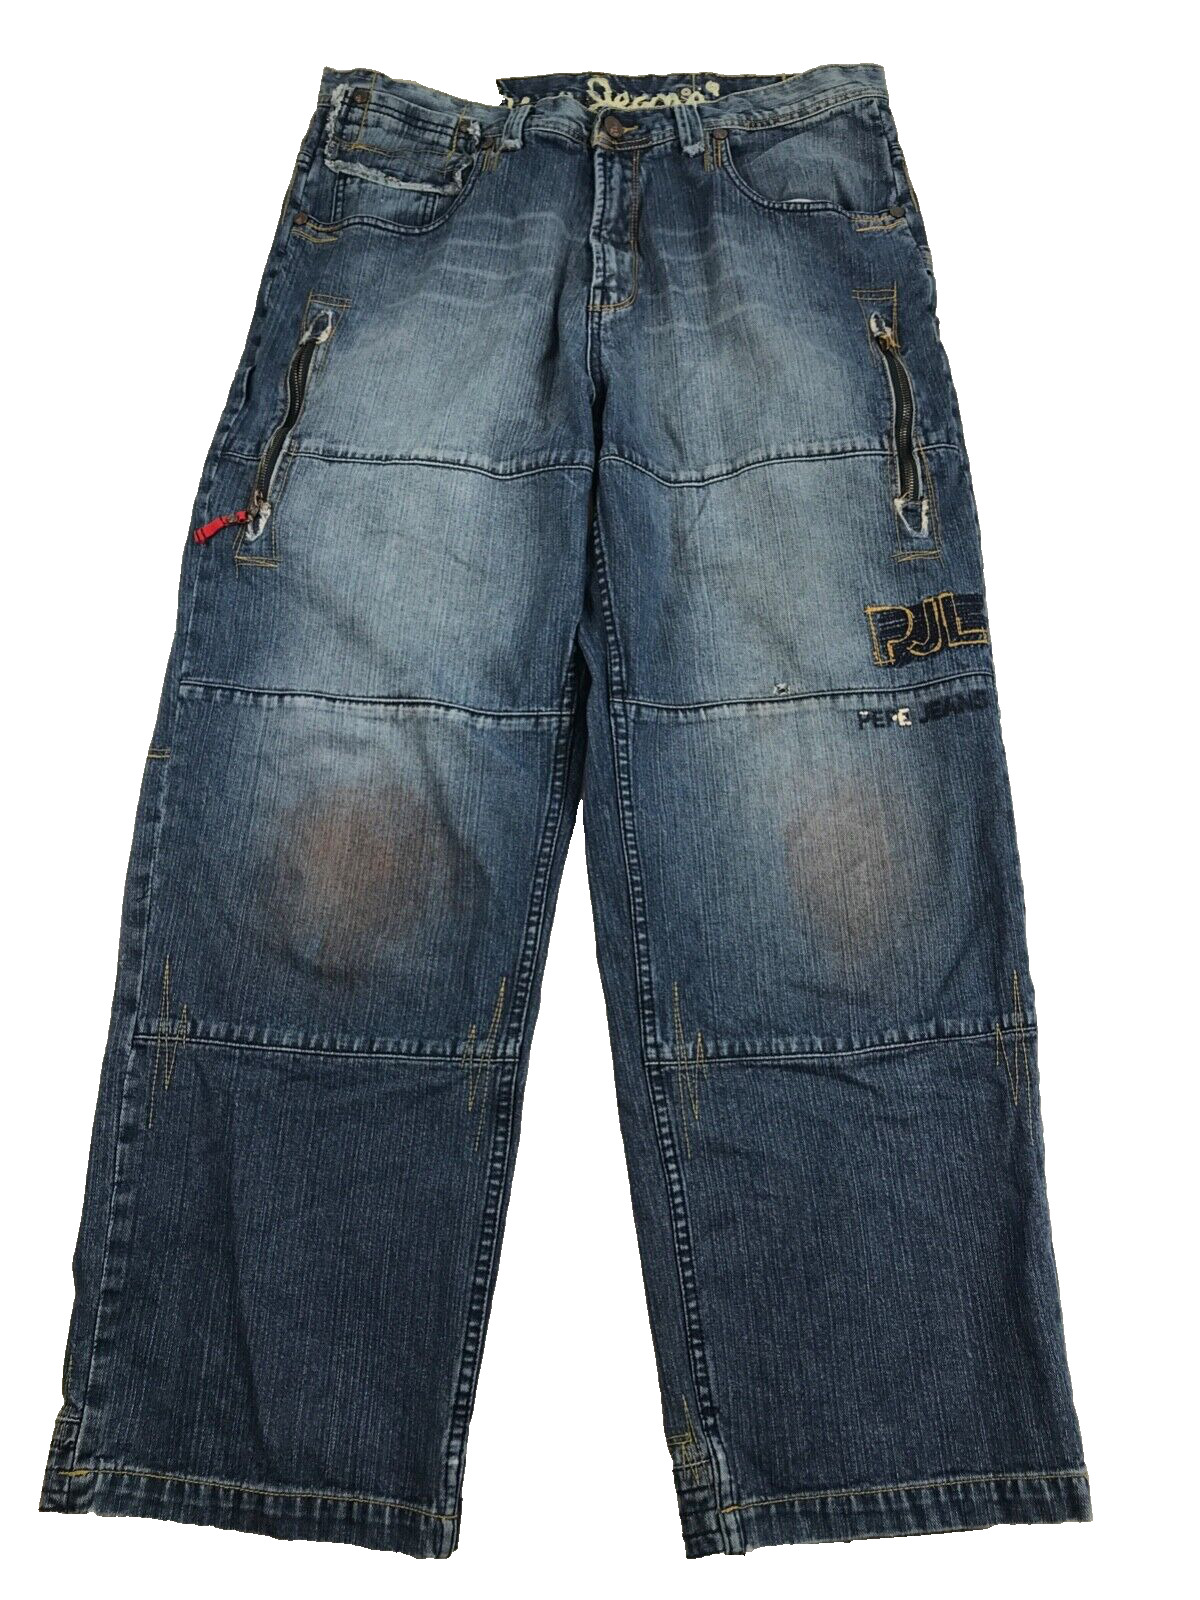 Vintage Pepe London Jeans Mens 40 Zip Pockets Baggy Hip Hop Skater Y2k JNCO 90s